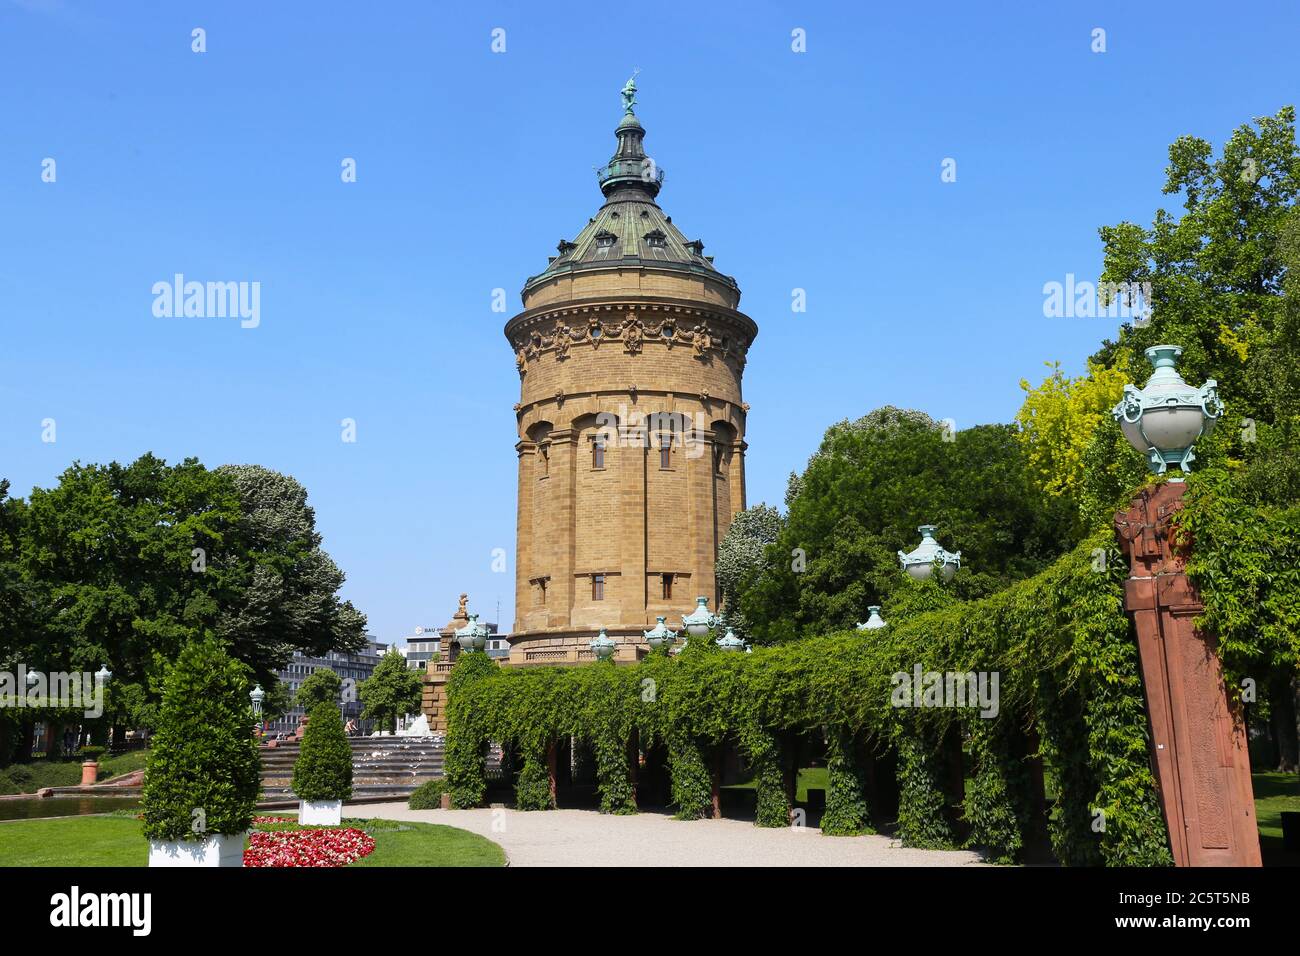 Der Wasserturm von Mannheim im Sommer Stock Photo